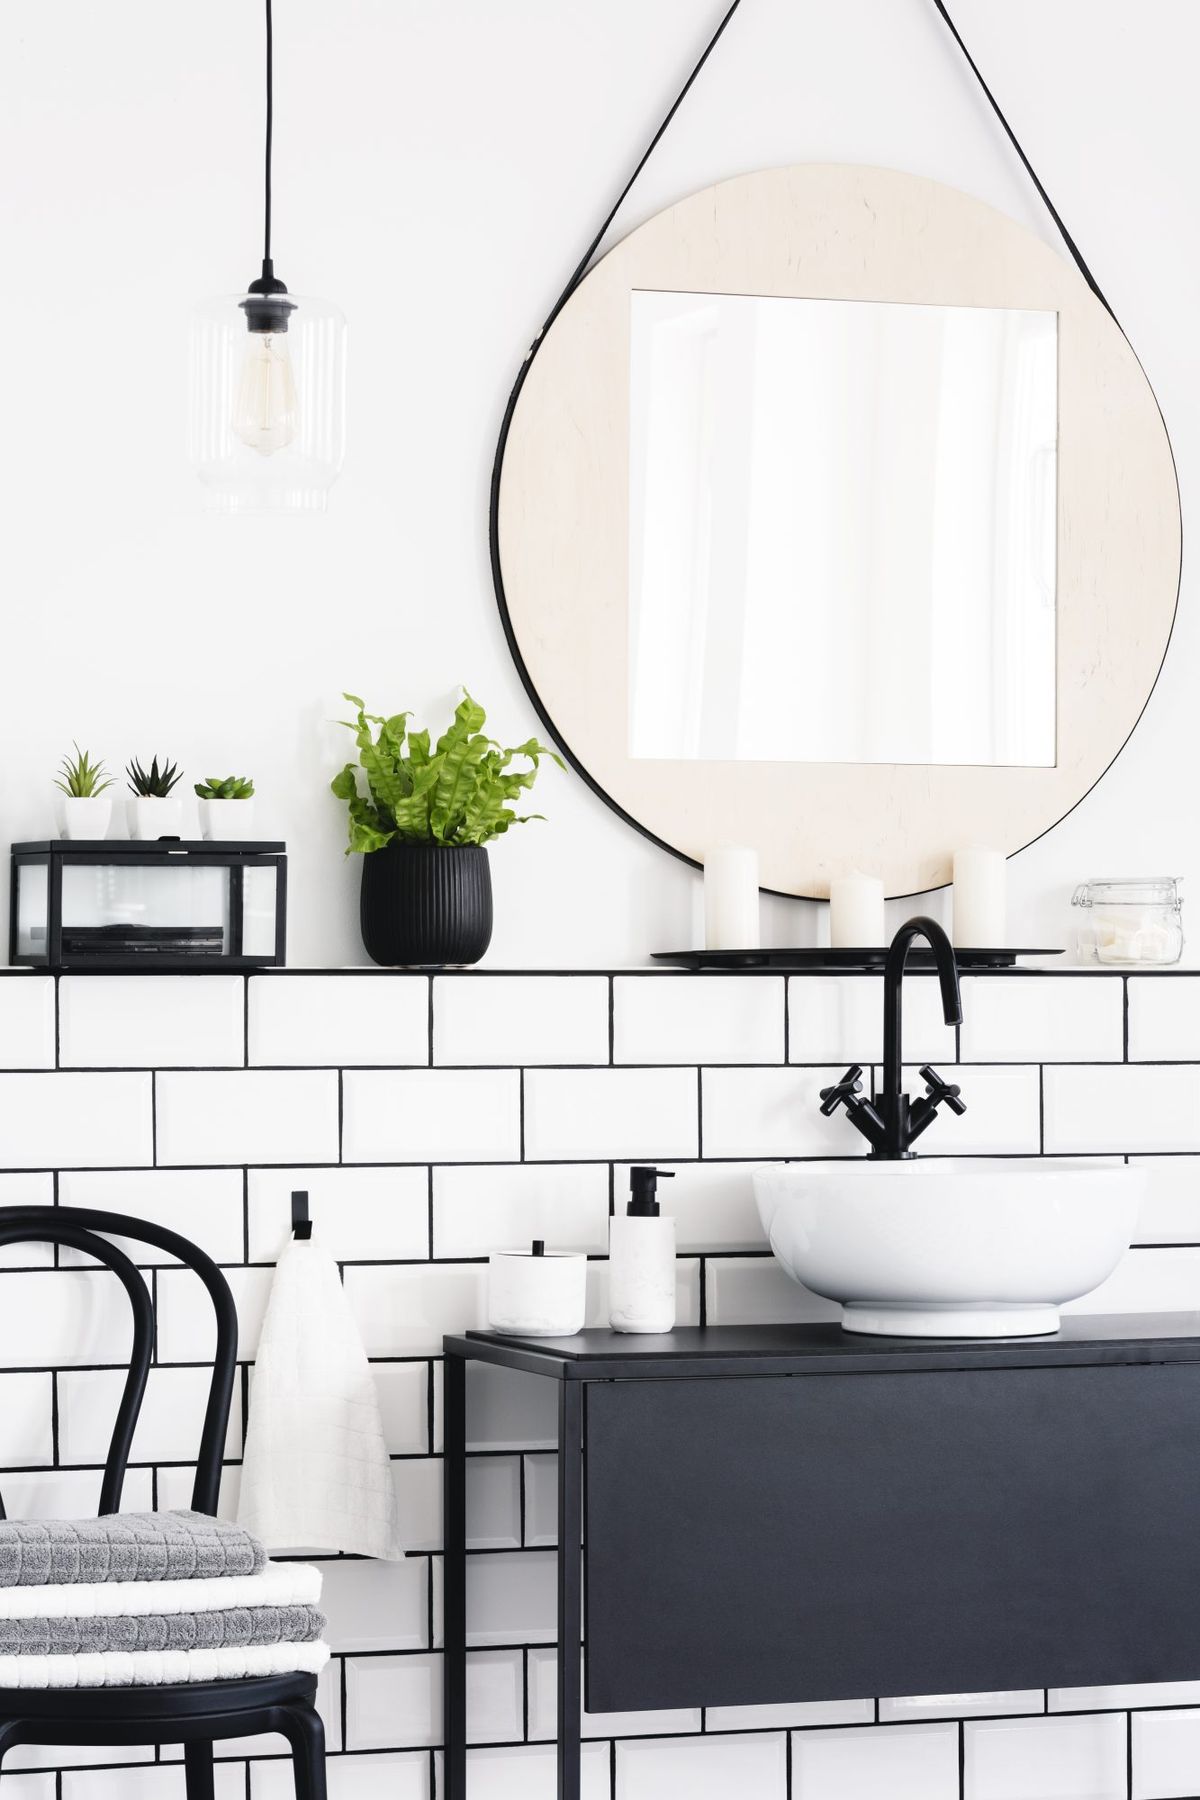 Toiletteninnenraum mit Spiegel, Pflanze, Stuhl und schwarzem Schrank